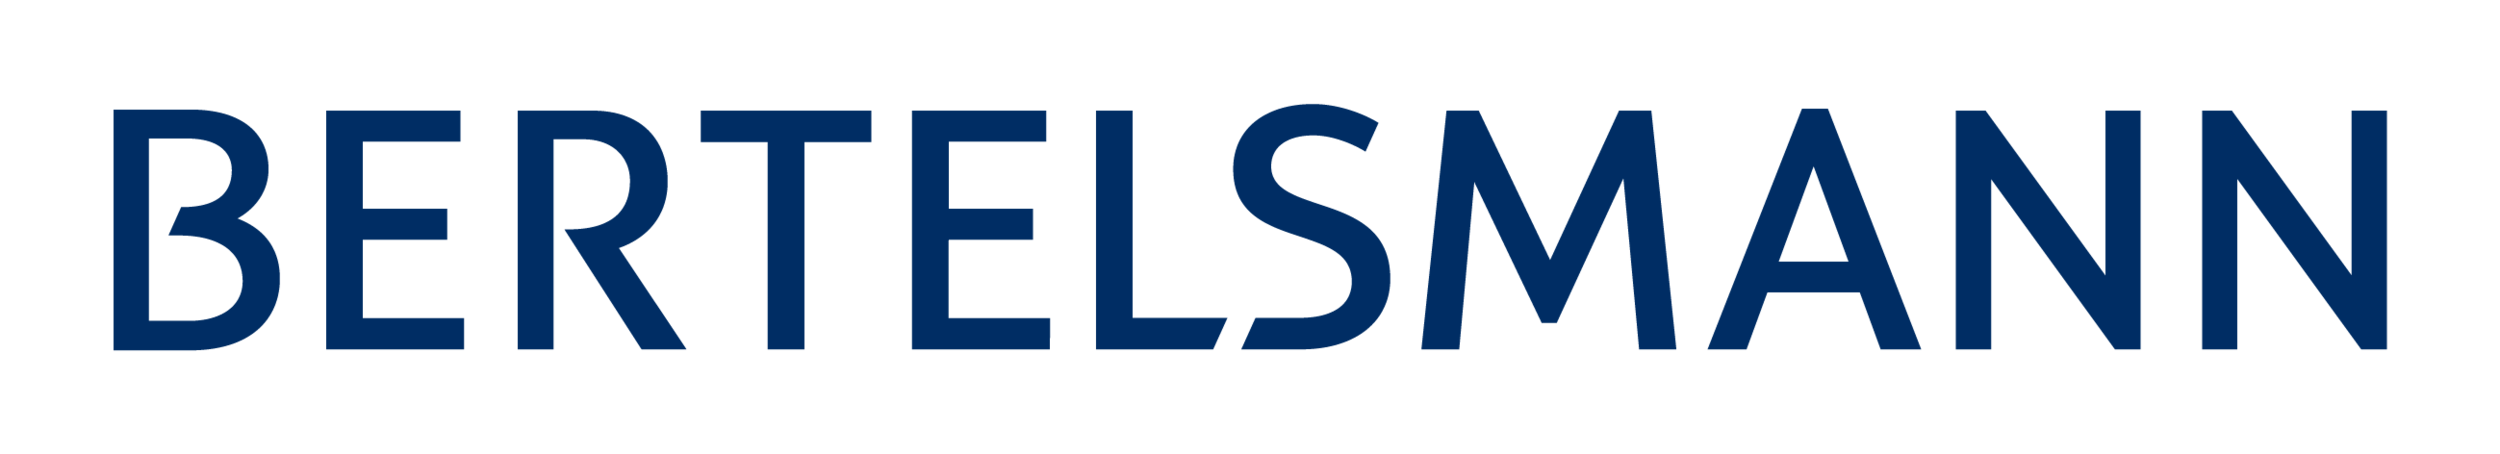 Bertelsmann_Logo_2016.png